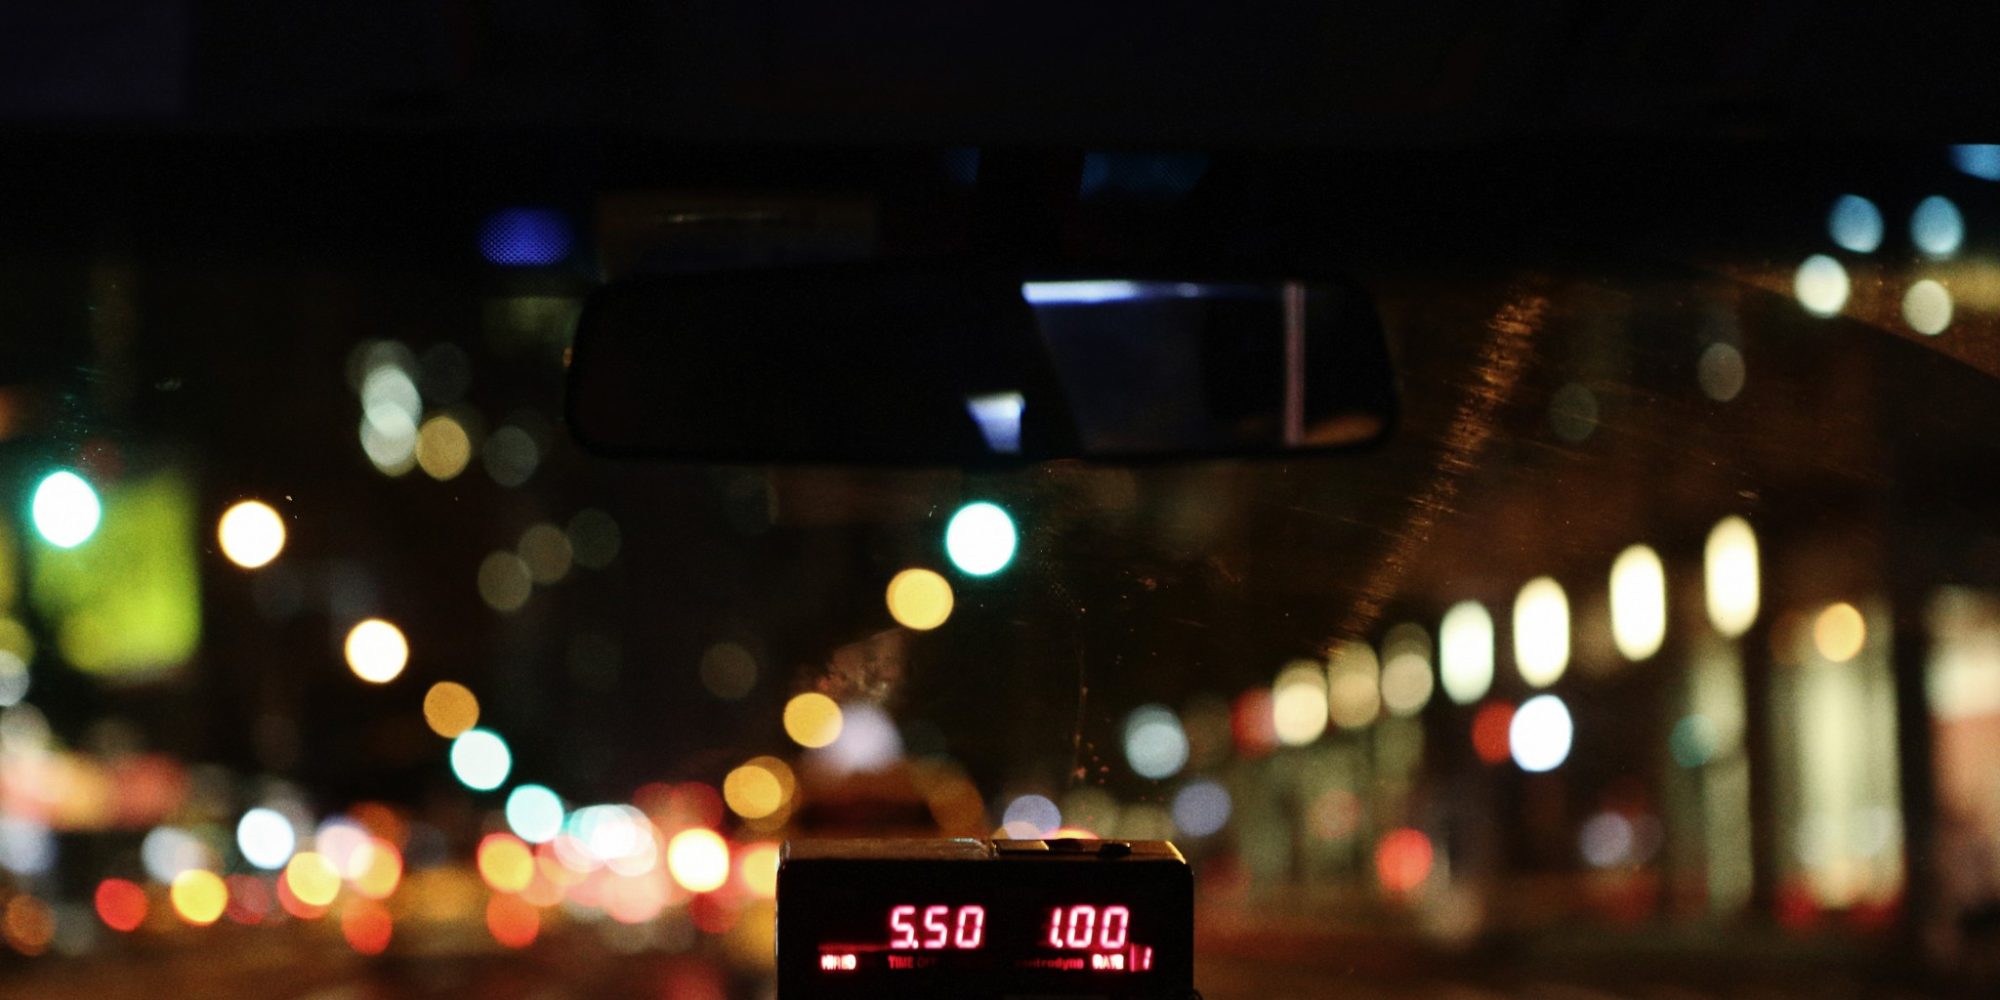 9-Life-of-Pix-free-stock-photos-city-taxi-night-light-leeroy